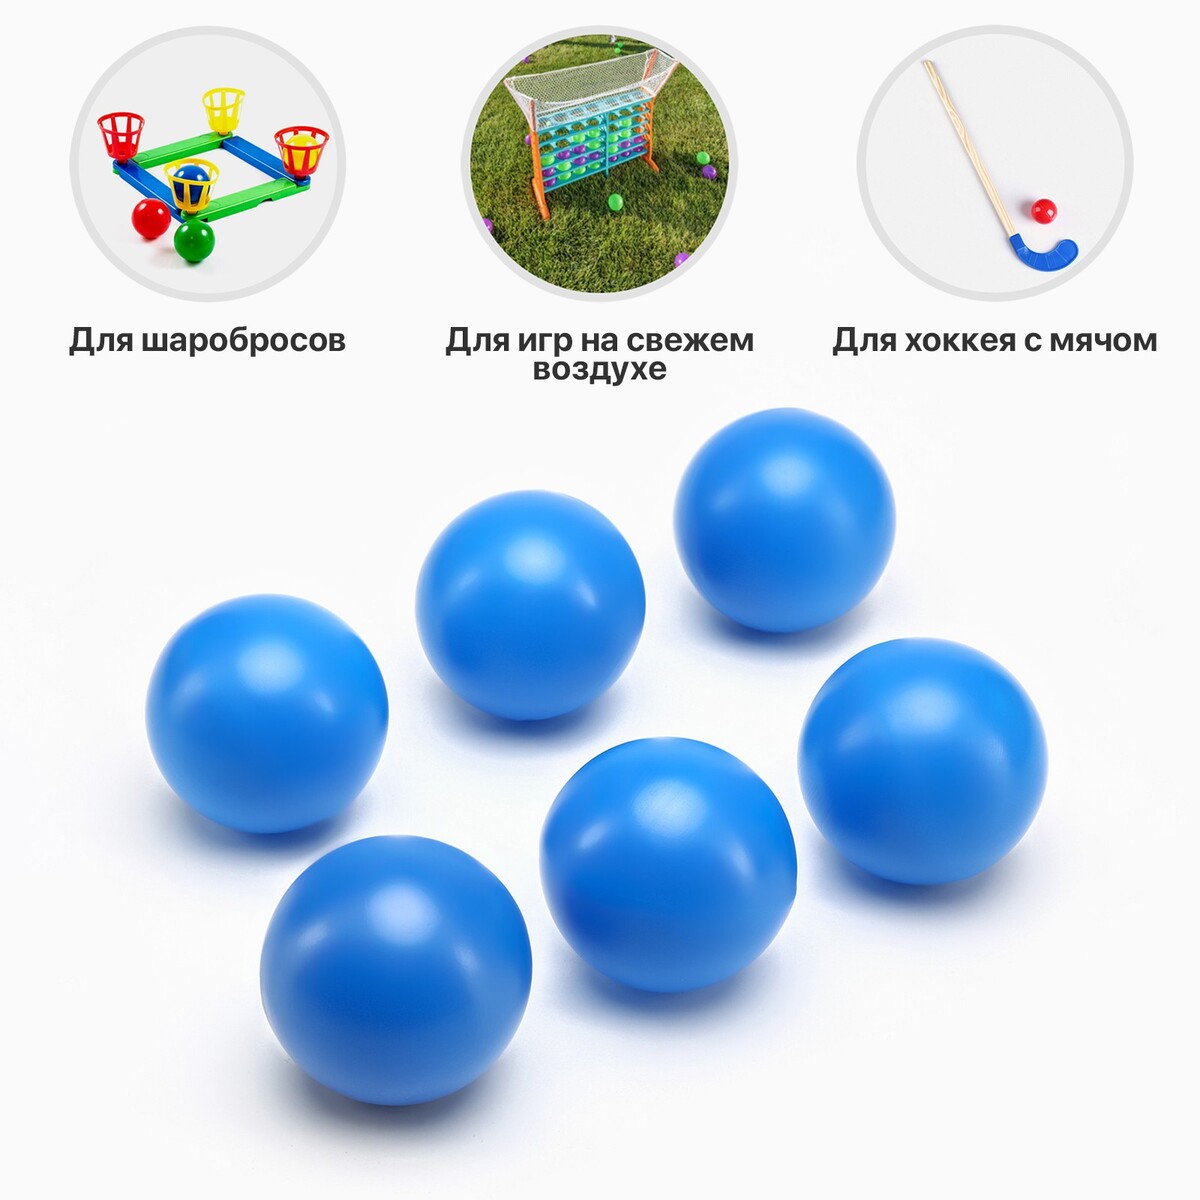 Набор мячей для садовых игр, хоккея, 6 шт, d-7 см набор мячей для настольного тенниса 6 шт блистер премиум y6 1878